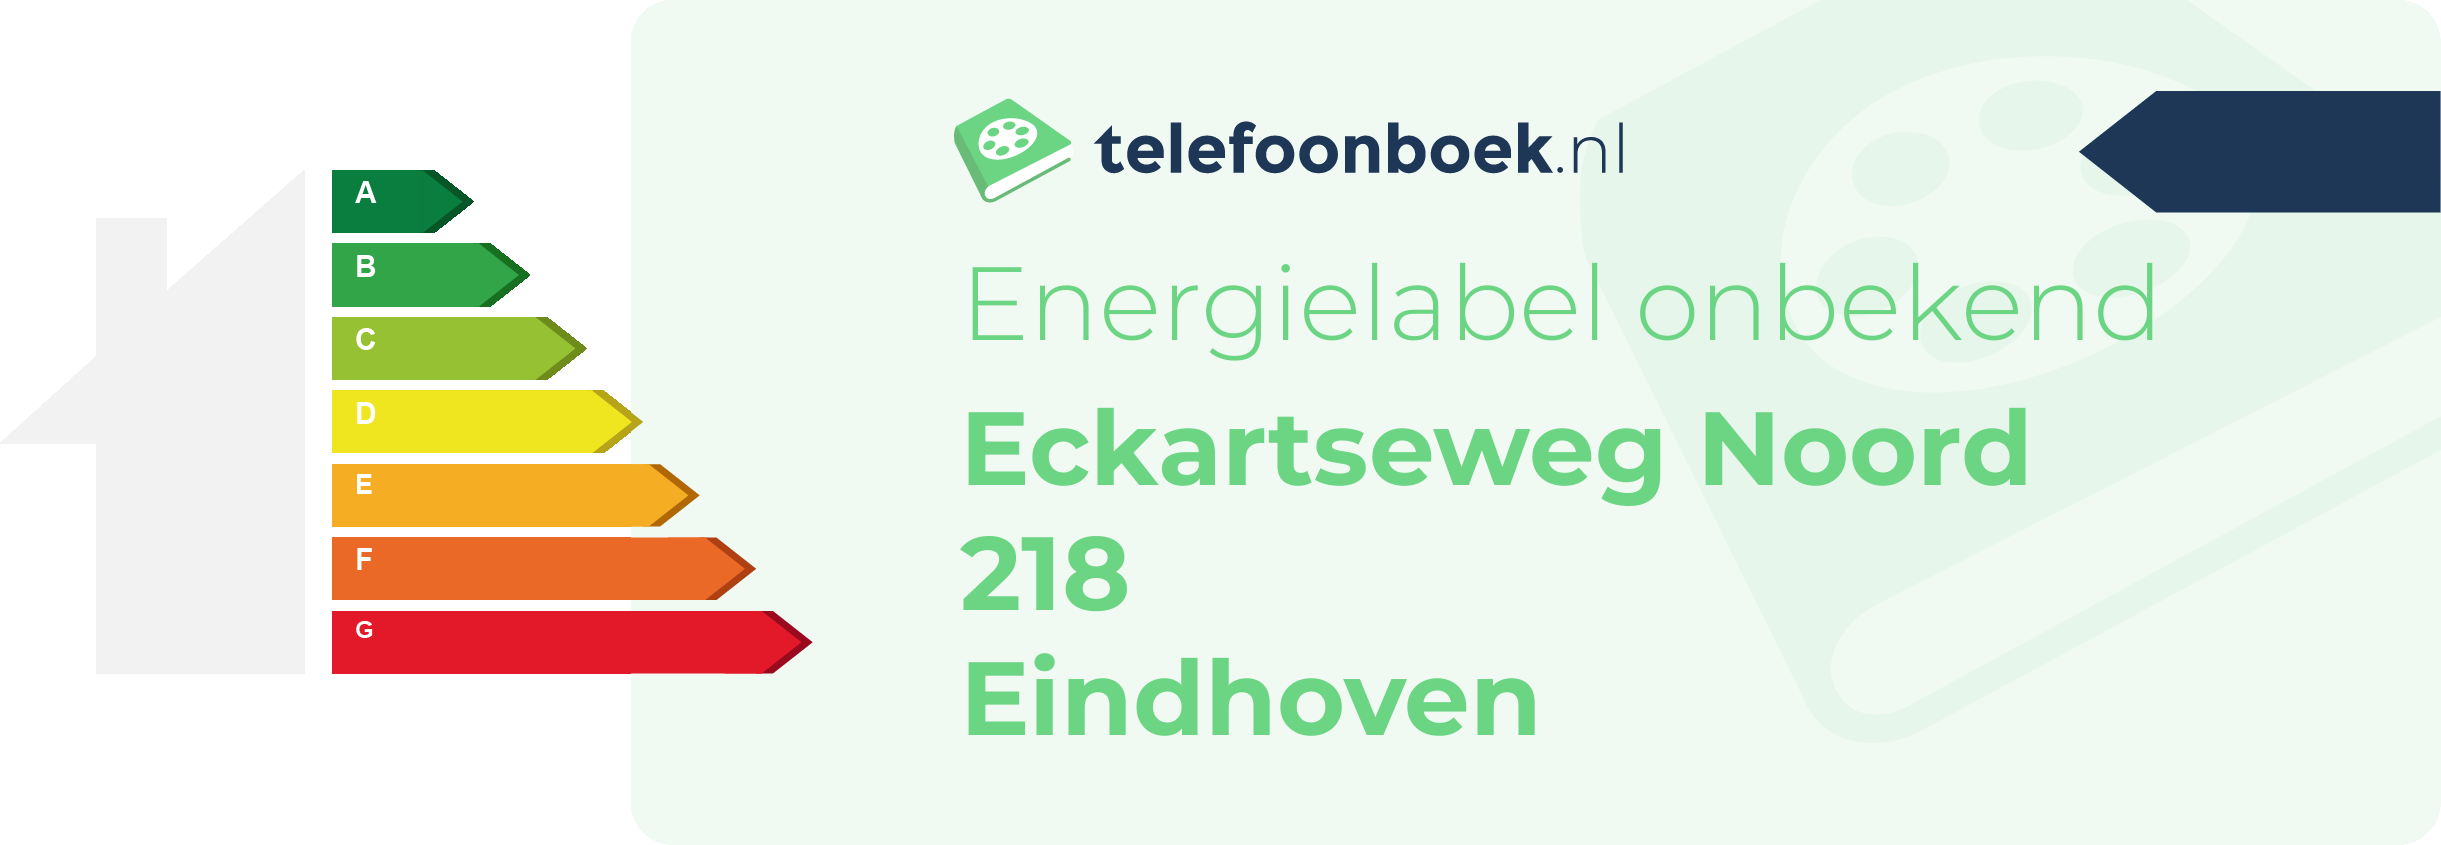 Energielabel Eckartseweg Noord 218 Eindhoven